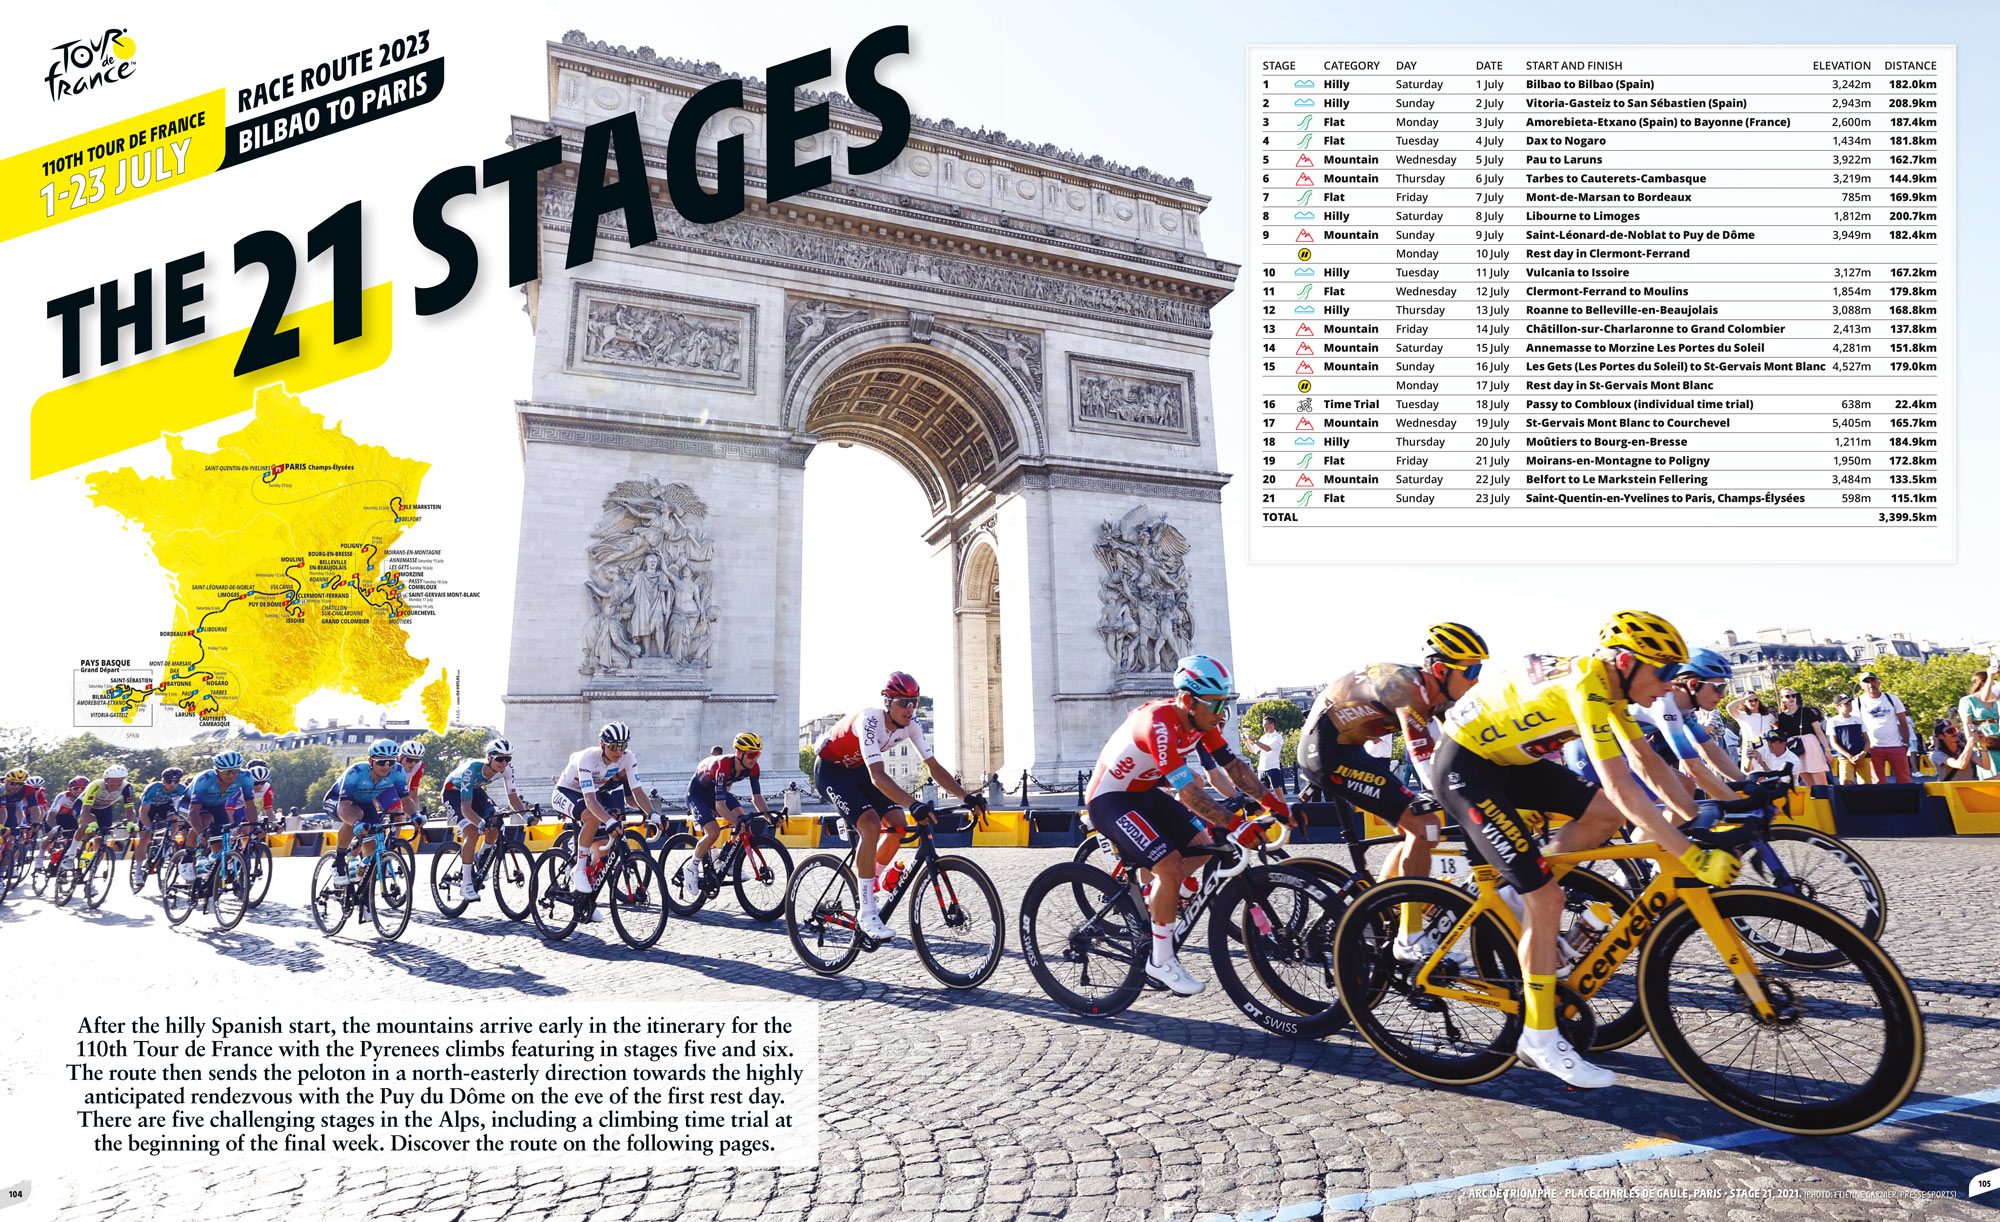 Tour de France Guide (riders)